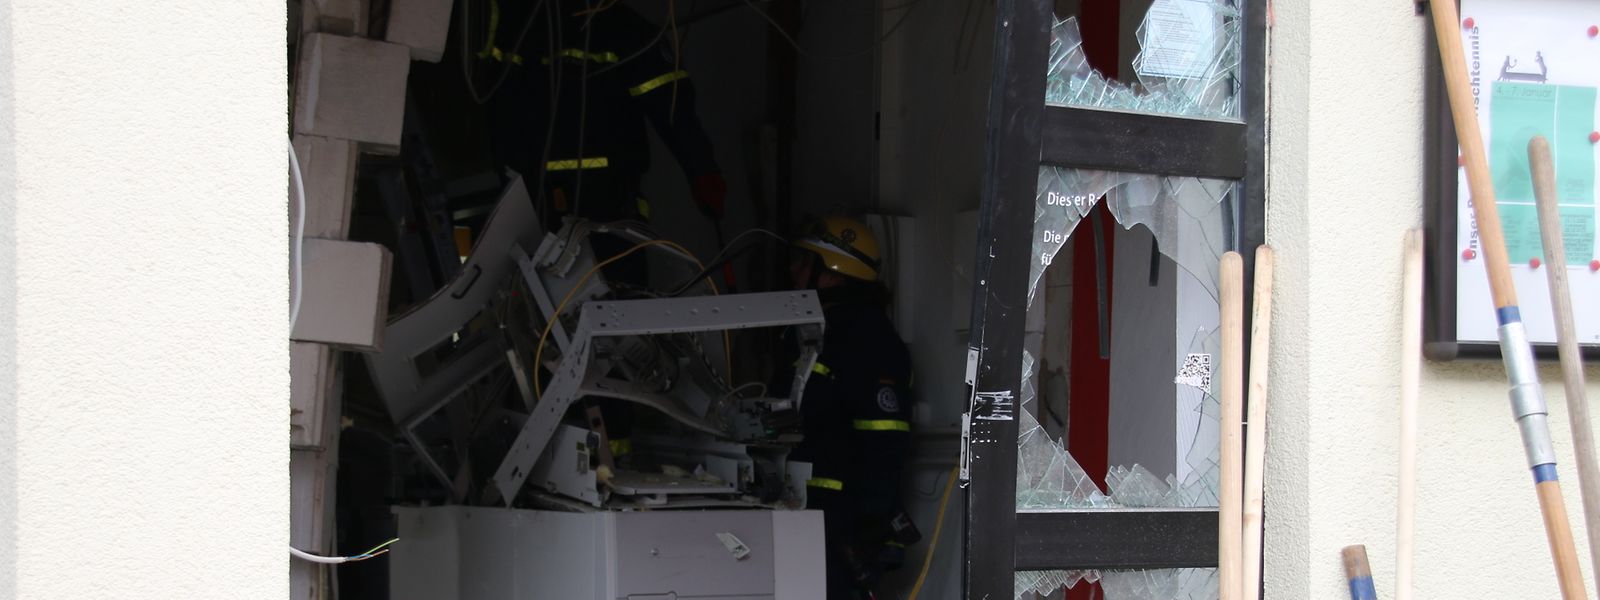 Unbekannte haben einen Geldautomaten im Ortsteil Bubach-Calmesweiler gesprengt